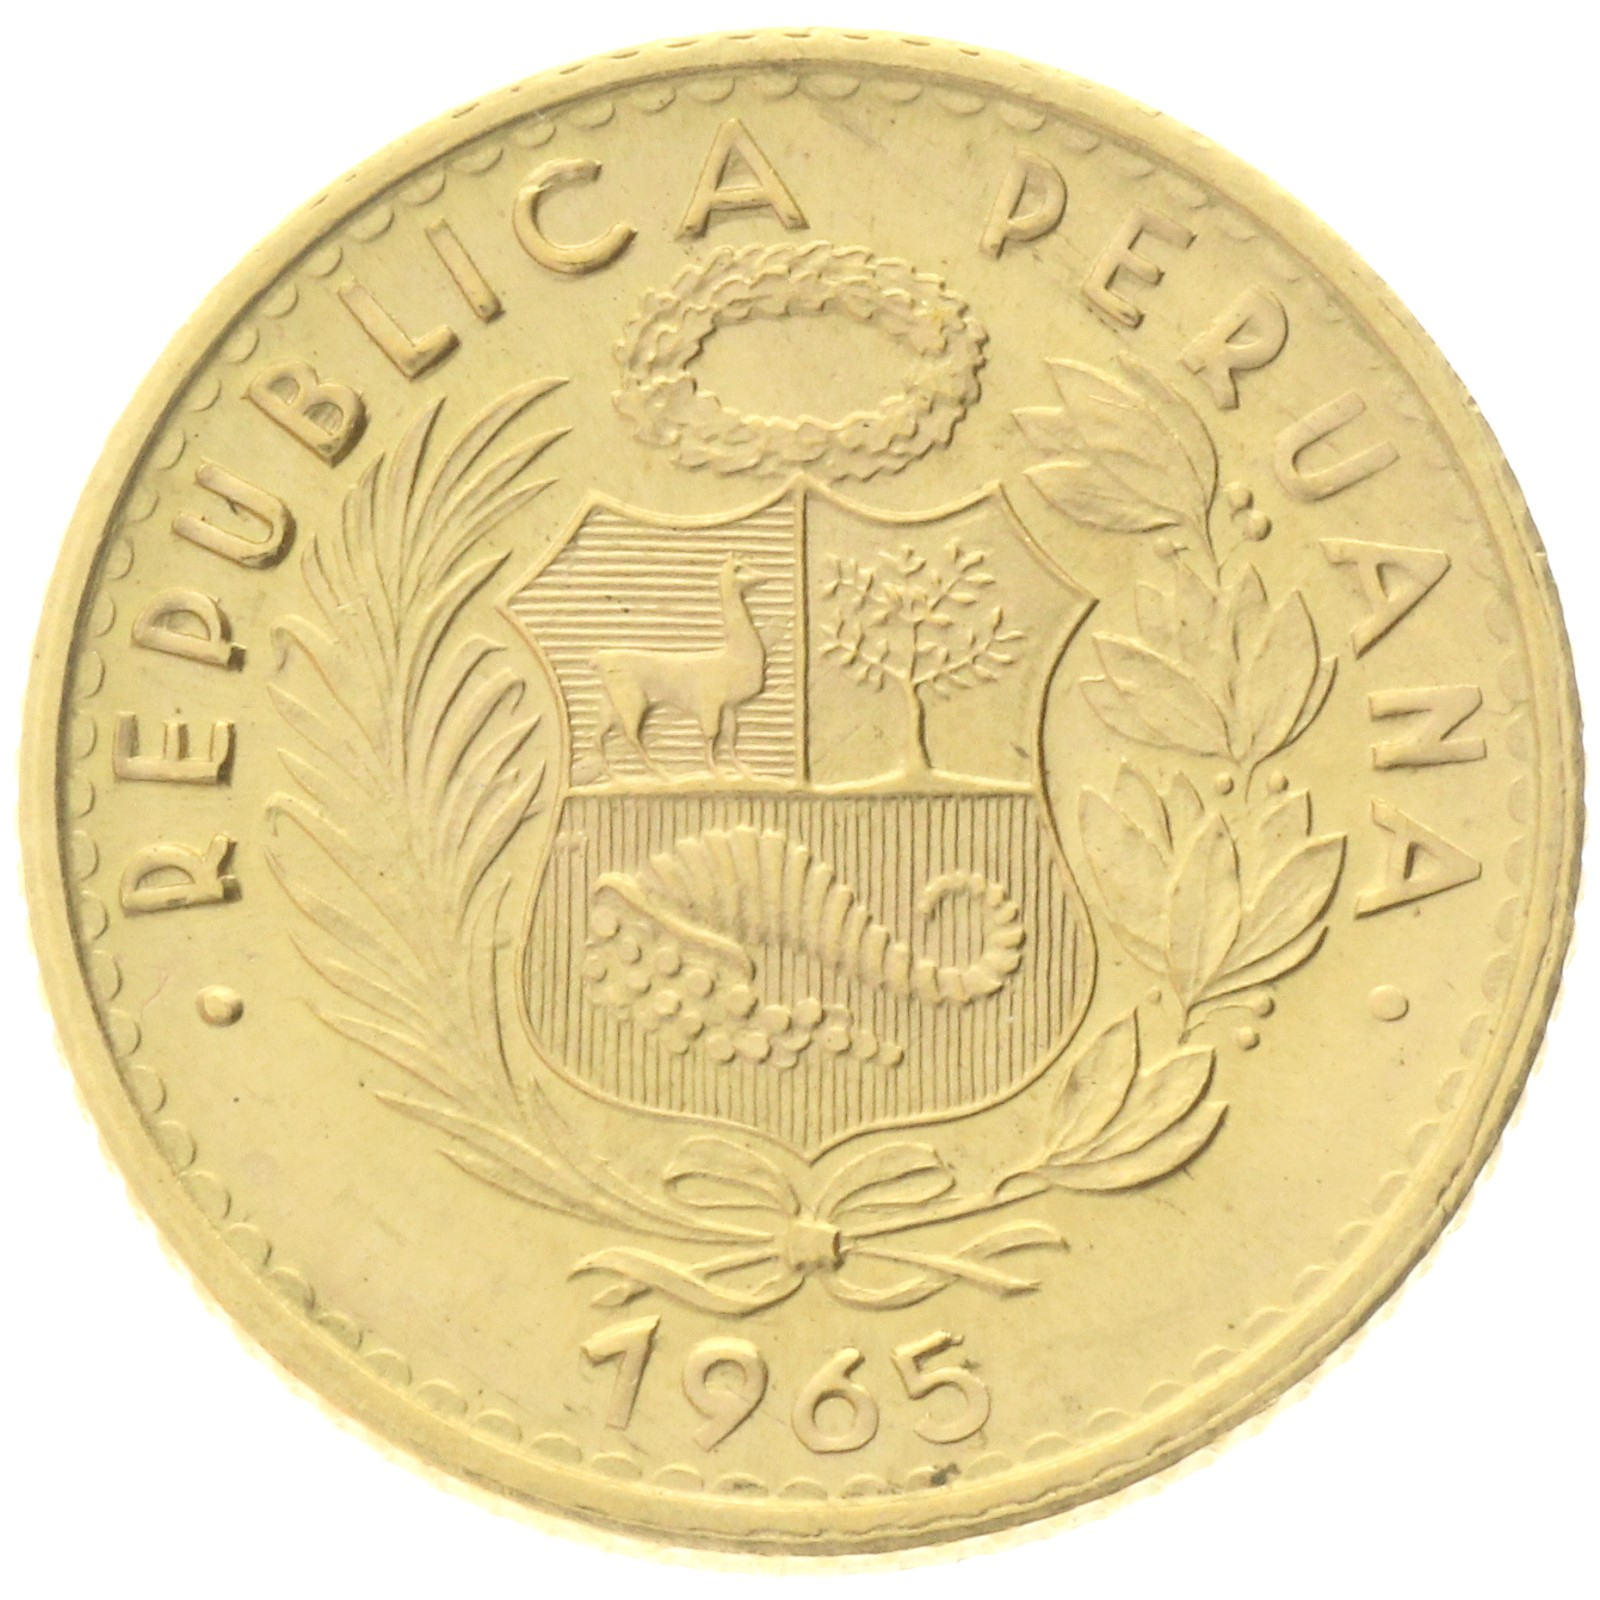 Peru - 10 Soles - 1965